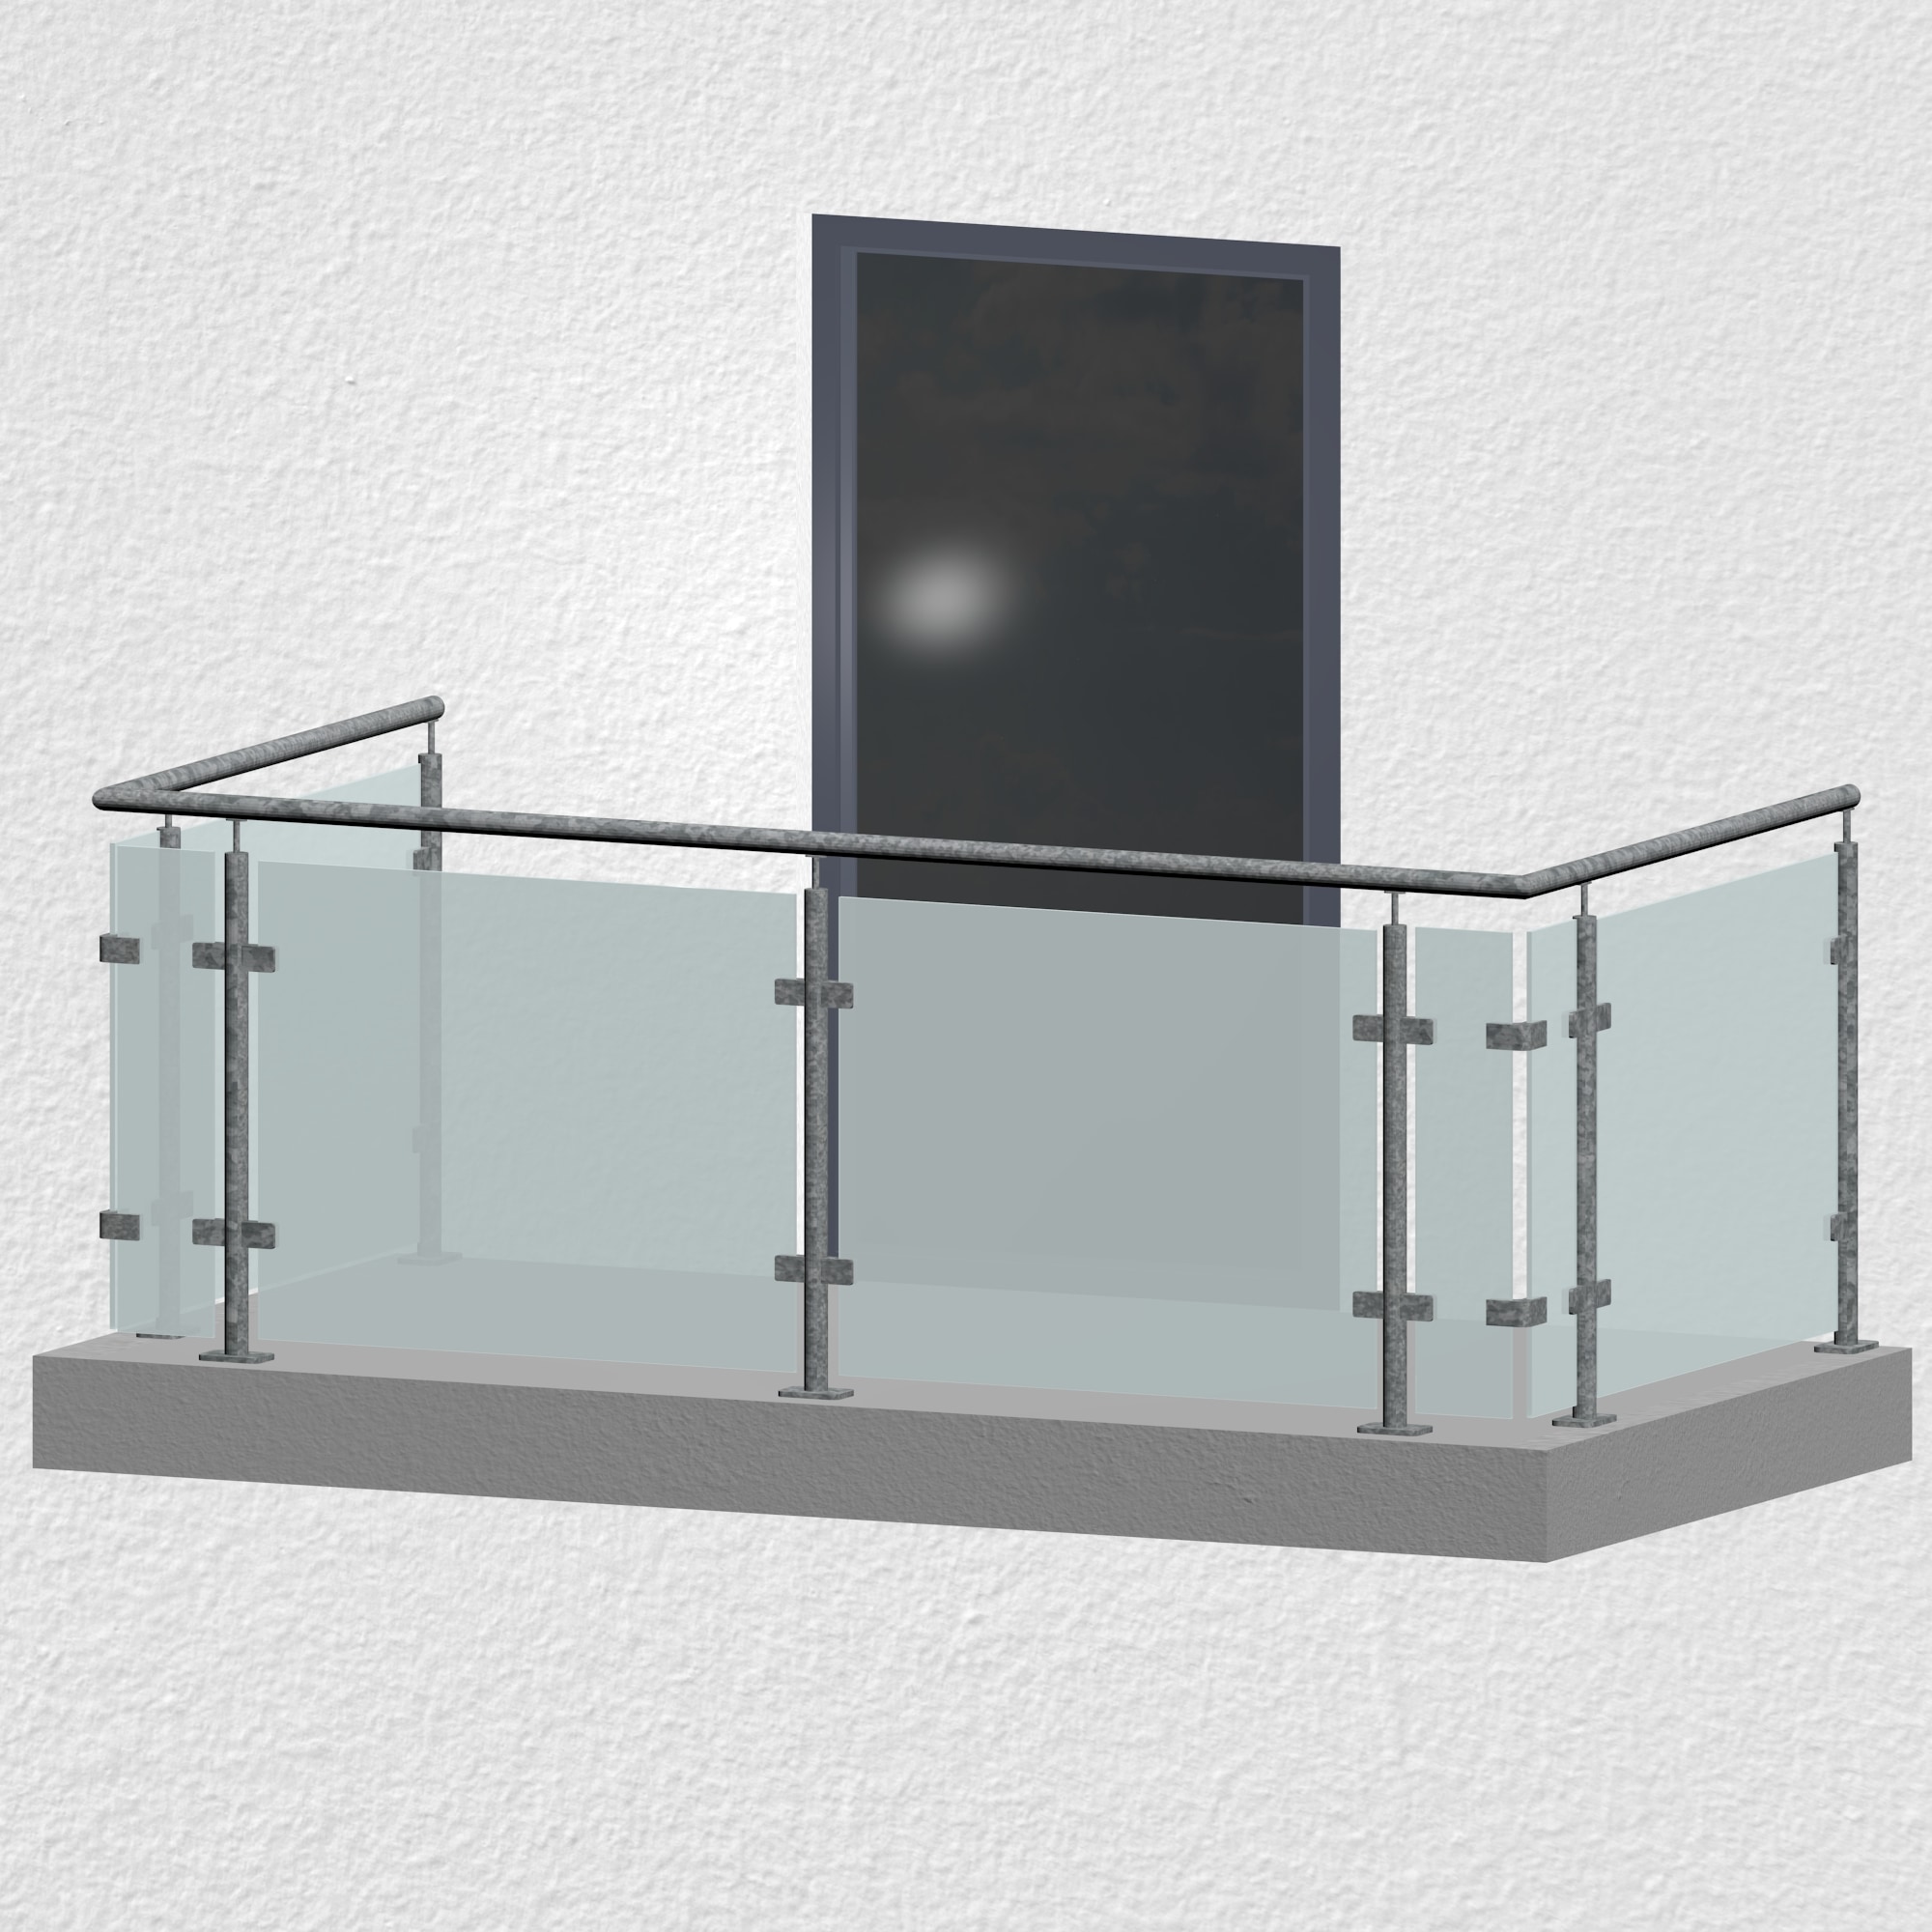 Balkon glasplatten - Die ausgezeichnetesten Balkon glasplatten unter die Lupe genommen!